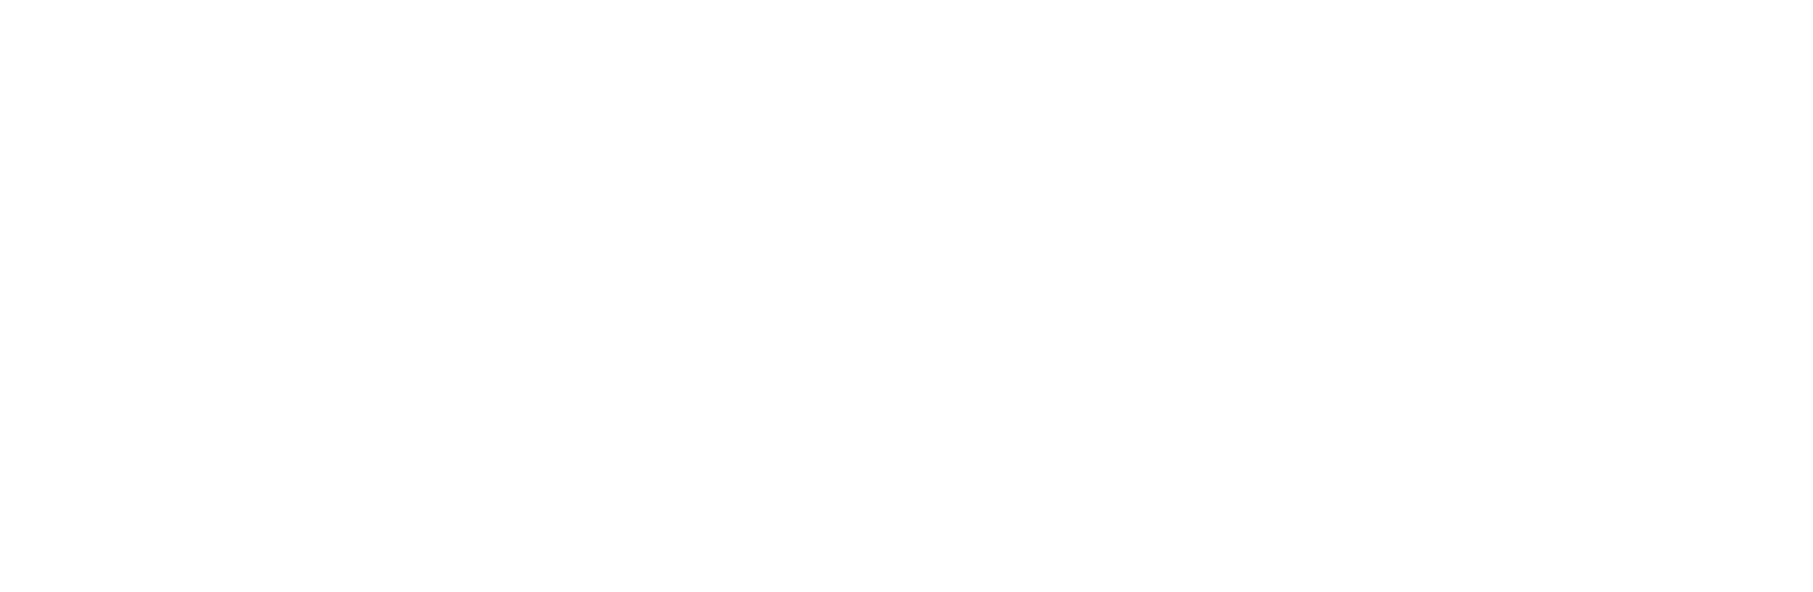 Cornerstone Community Capital